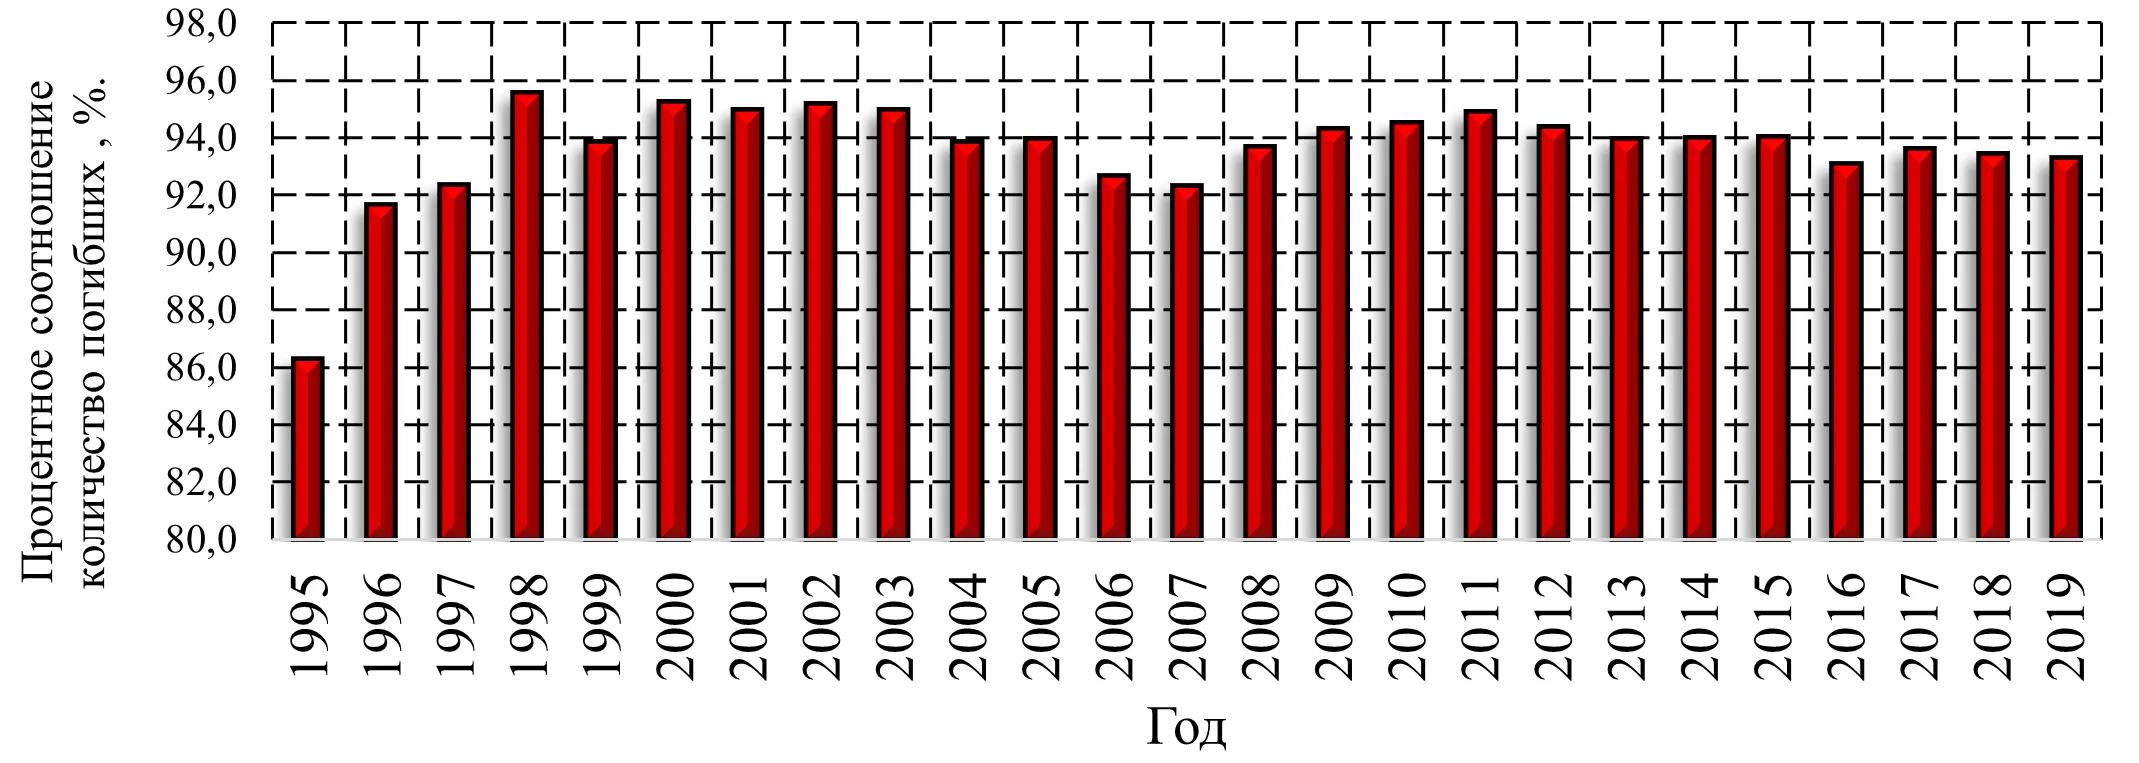 Гистограмма распределения процентного соотношения количества погибших по причине нарушения правил пожарной безопасности и неосторожного обращения с огнем к общему количеству погибших при пожарах в Российской Федерации с 1995 по 2019 года